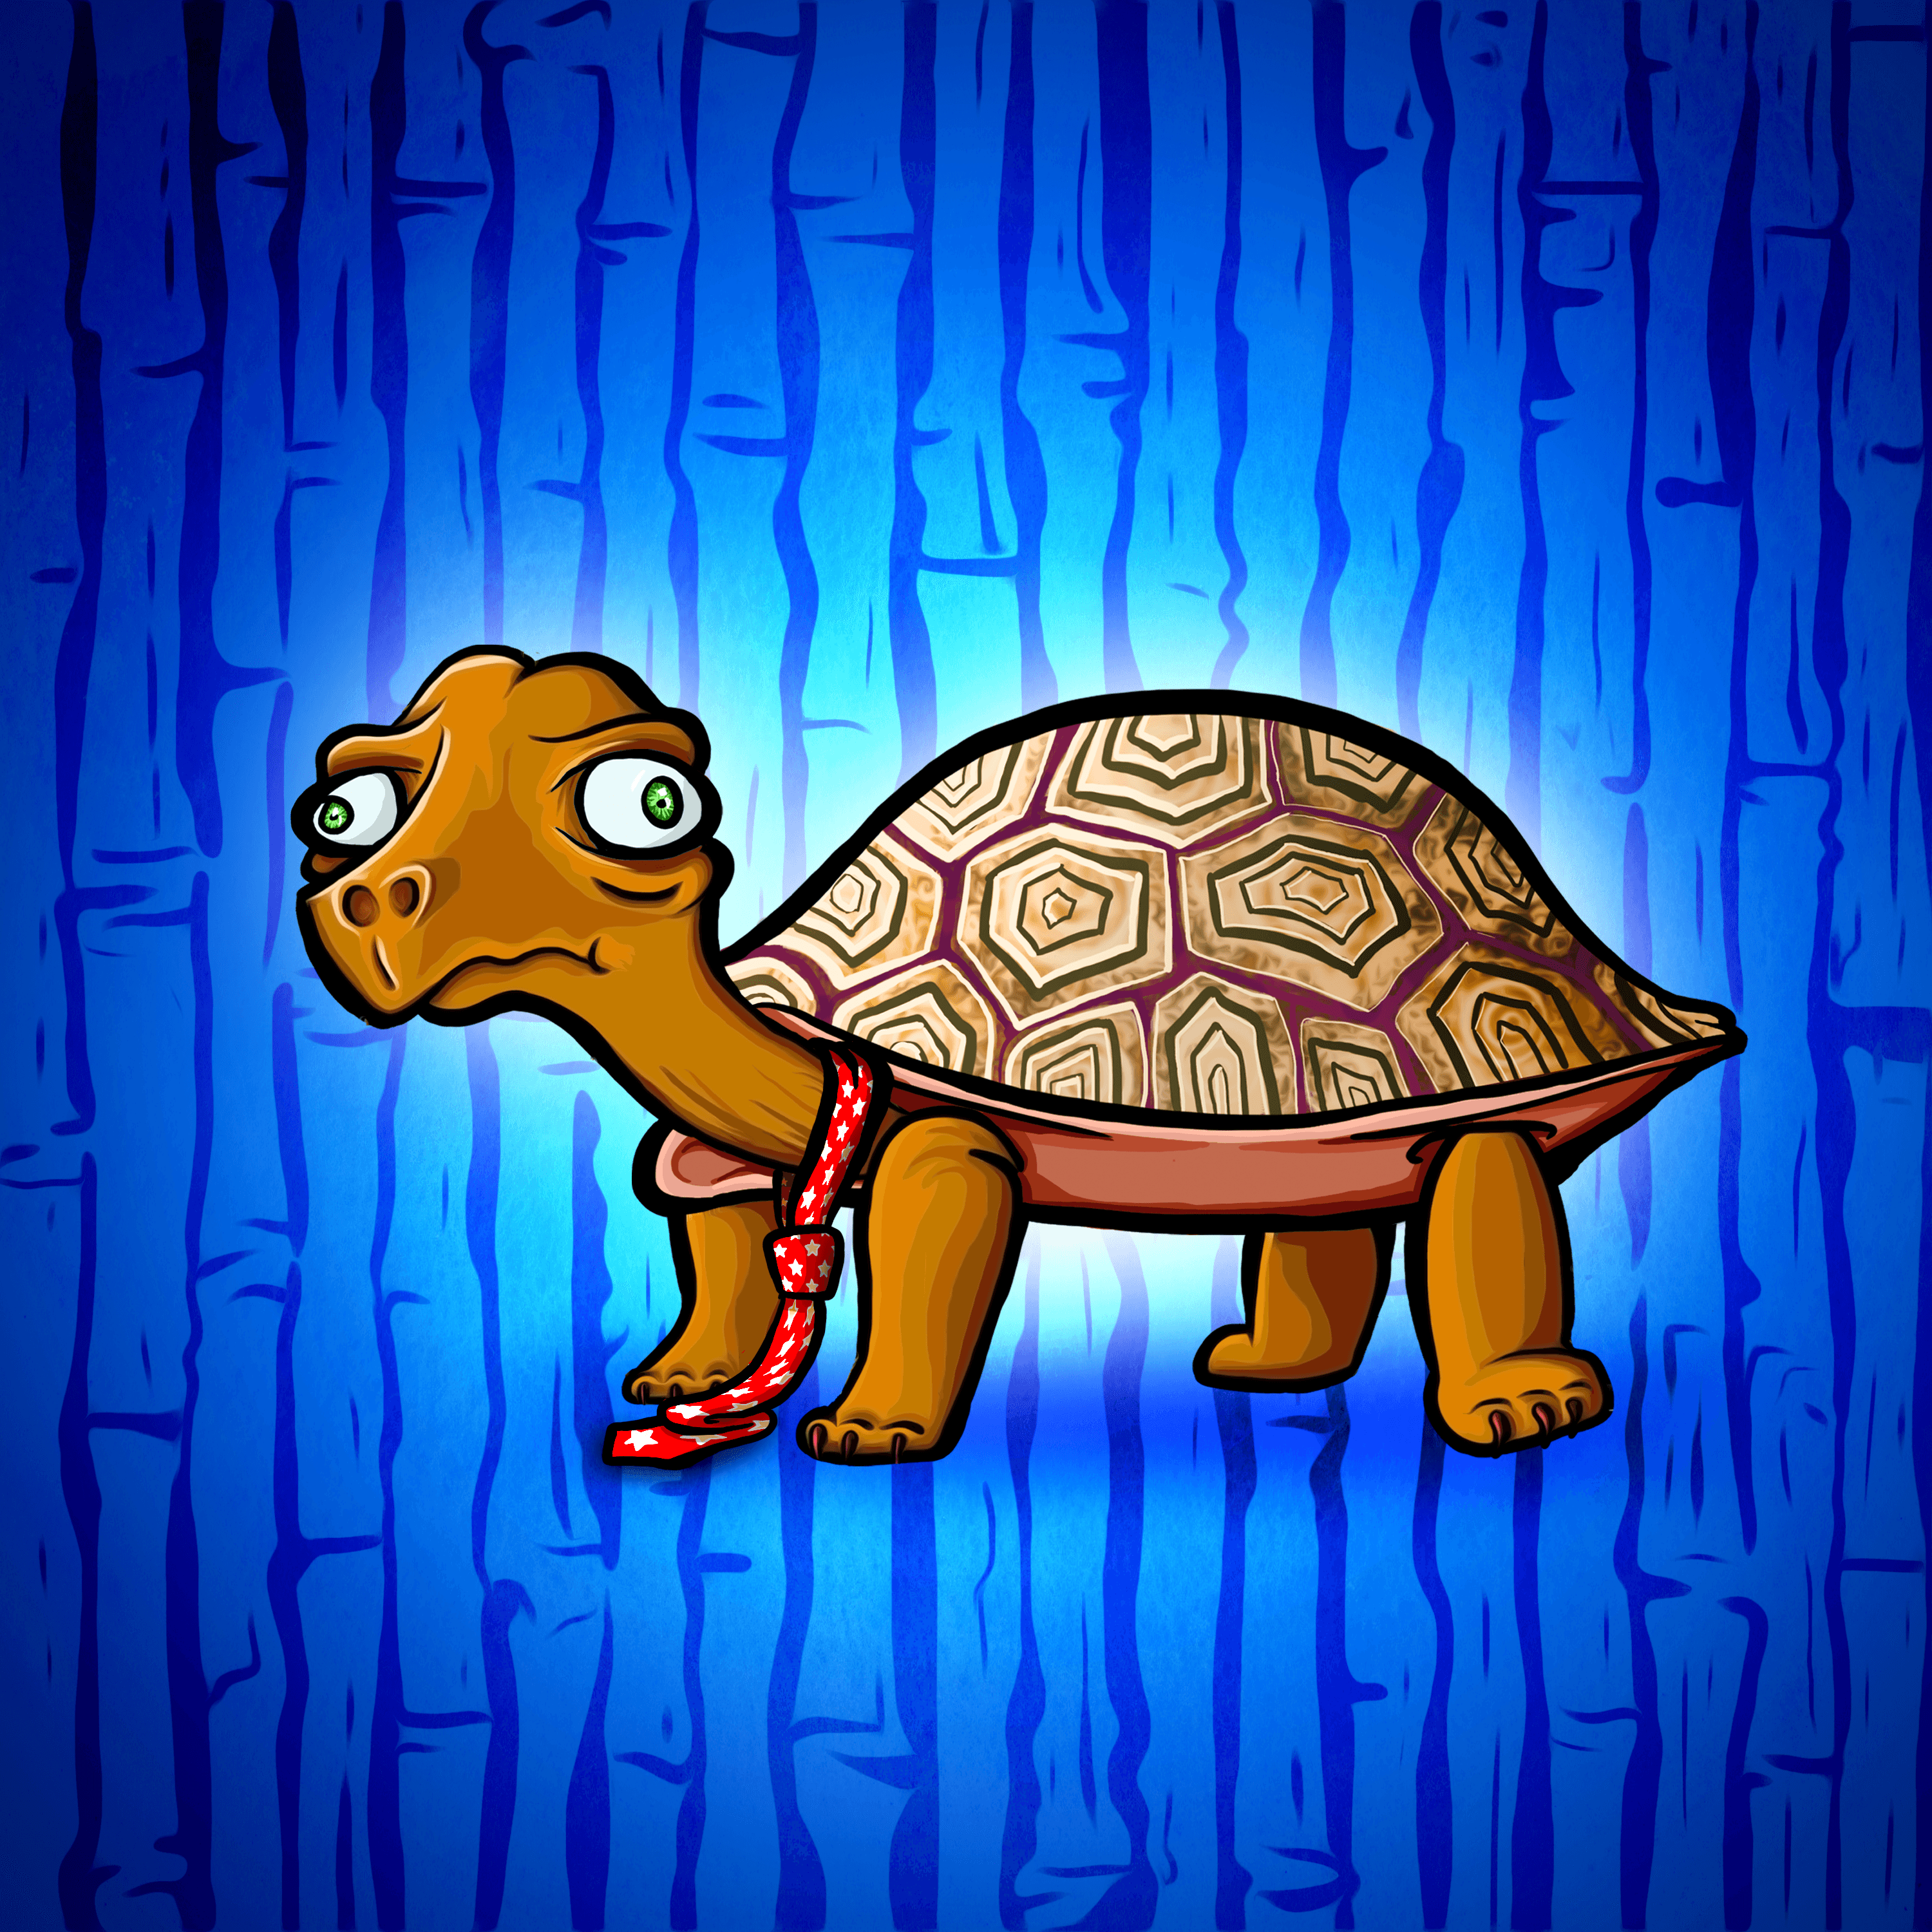 awkward turtle drawing